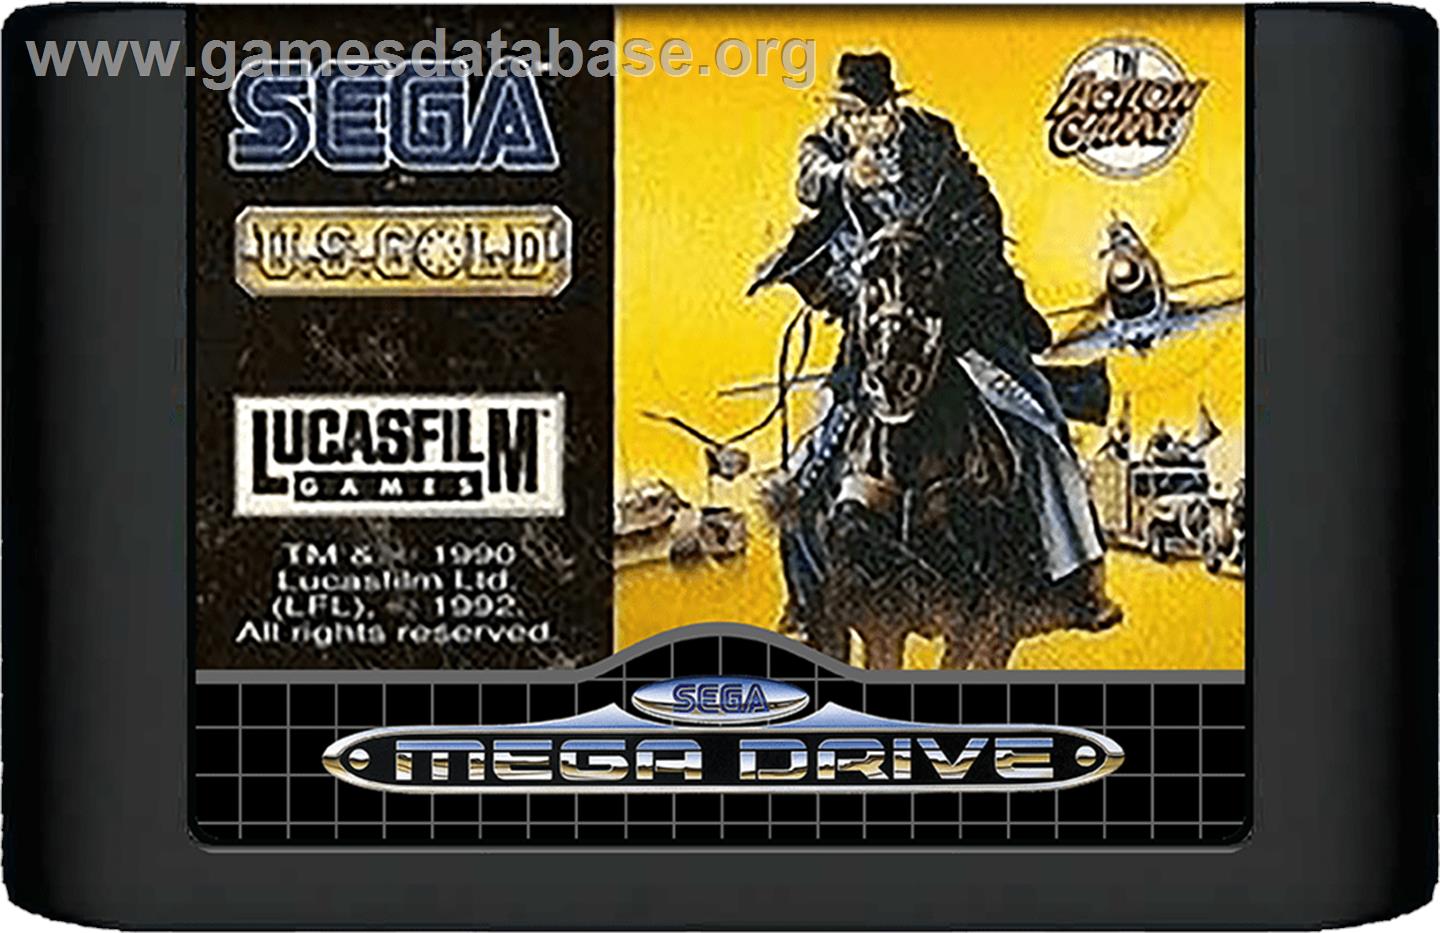 Indiana Jones and the Last Crusade: The Action Game - Sega Genesis - Artwork - Cartridge